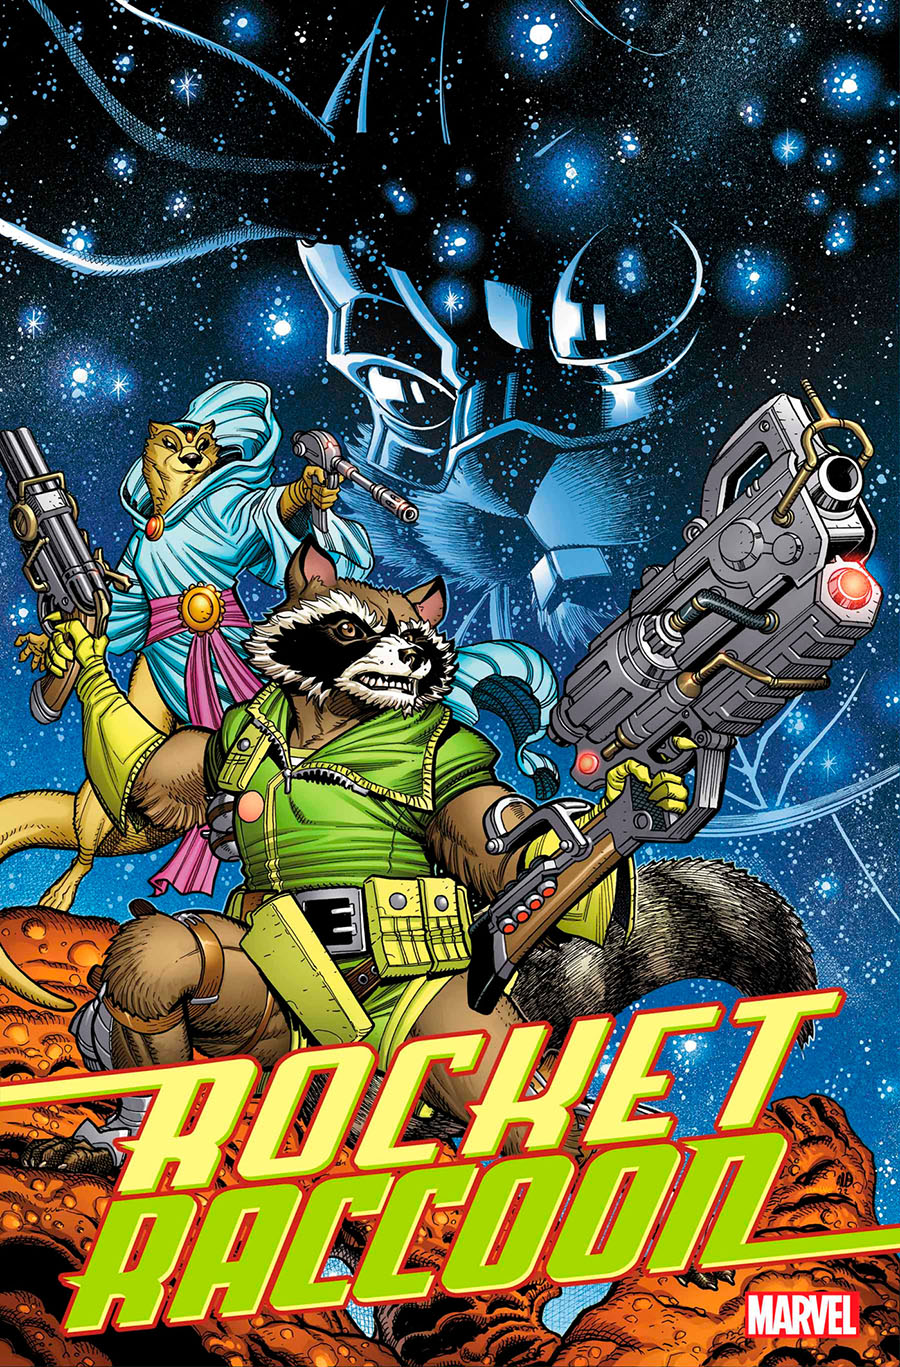 Rocket Marvel Tales #1